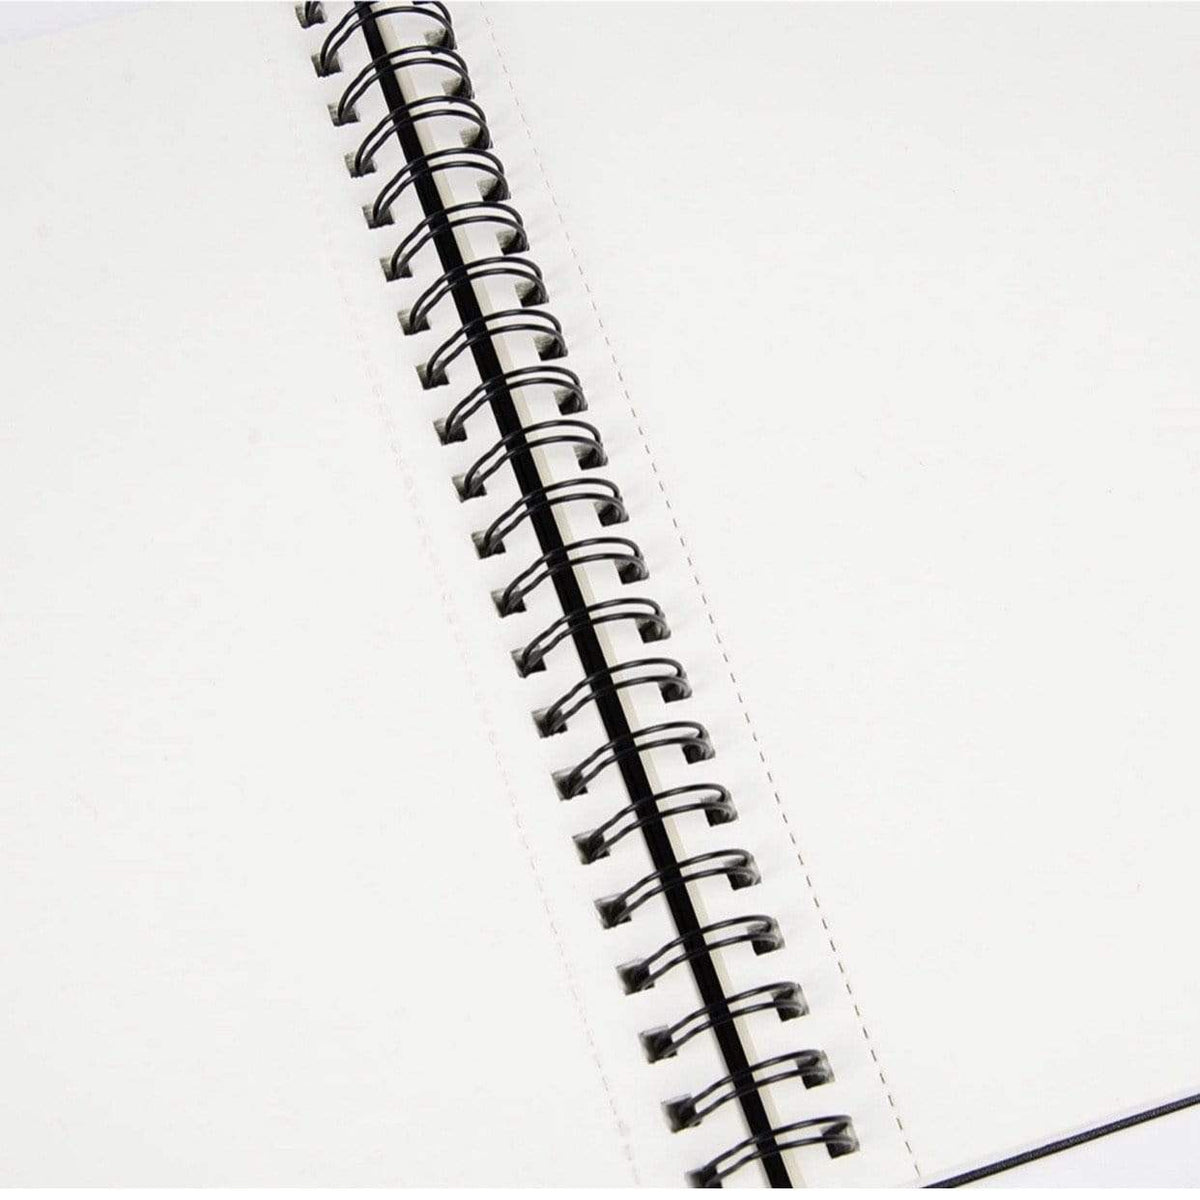 Sketchbook, Spiral-Bound Hardcover, Black, 9x12” - Pack of 2